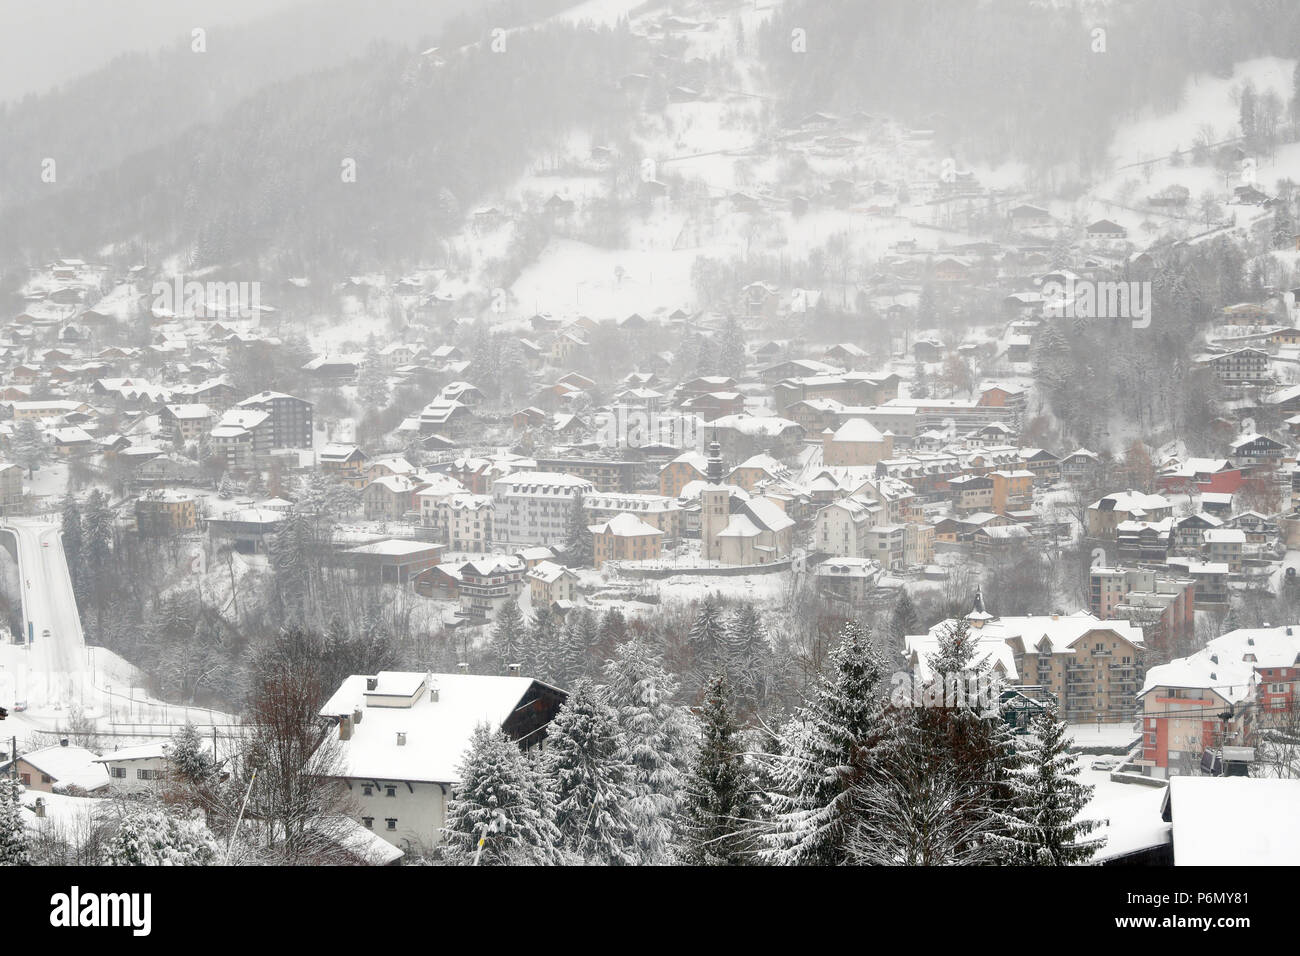 Vue générale de Saint-Gervais Mont-Blanc en hiver. La France. Banque D'Images